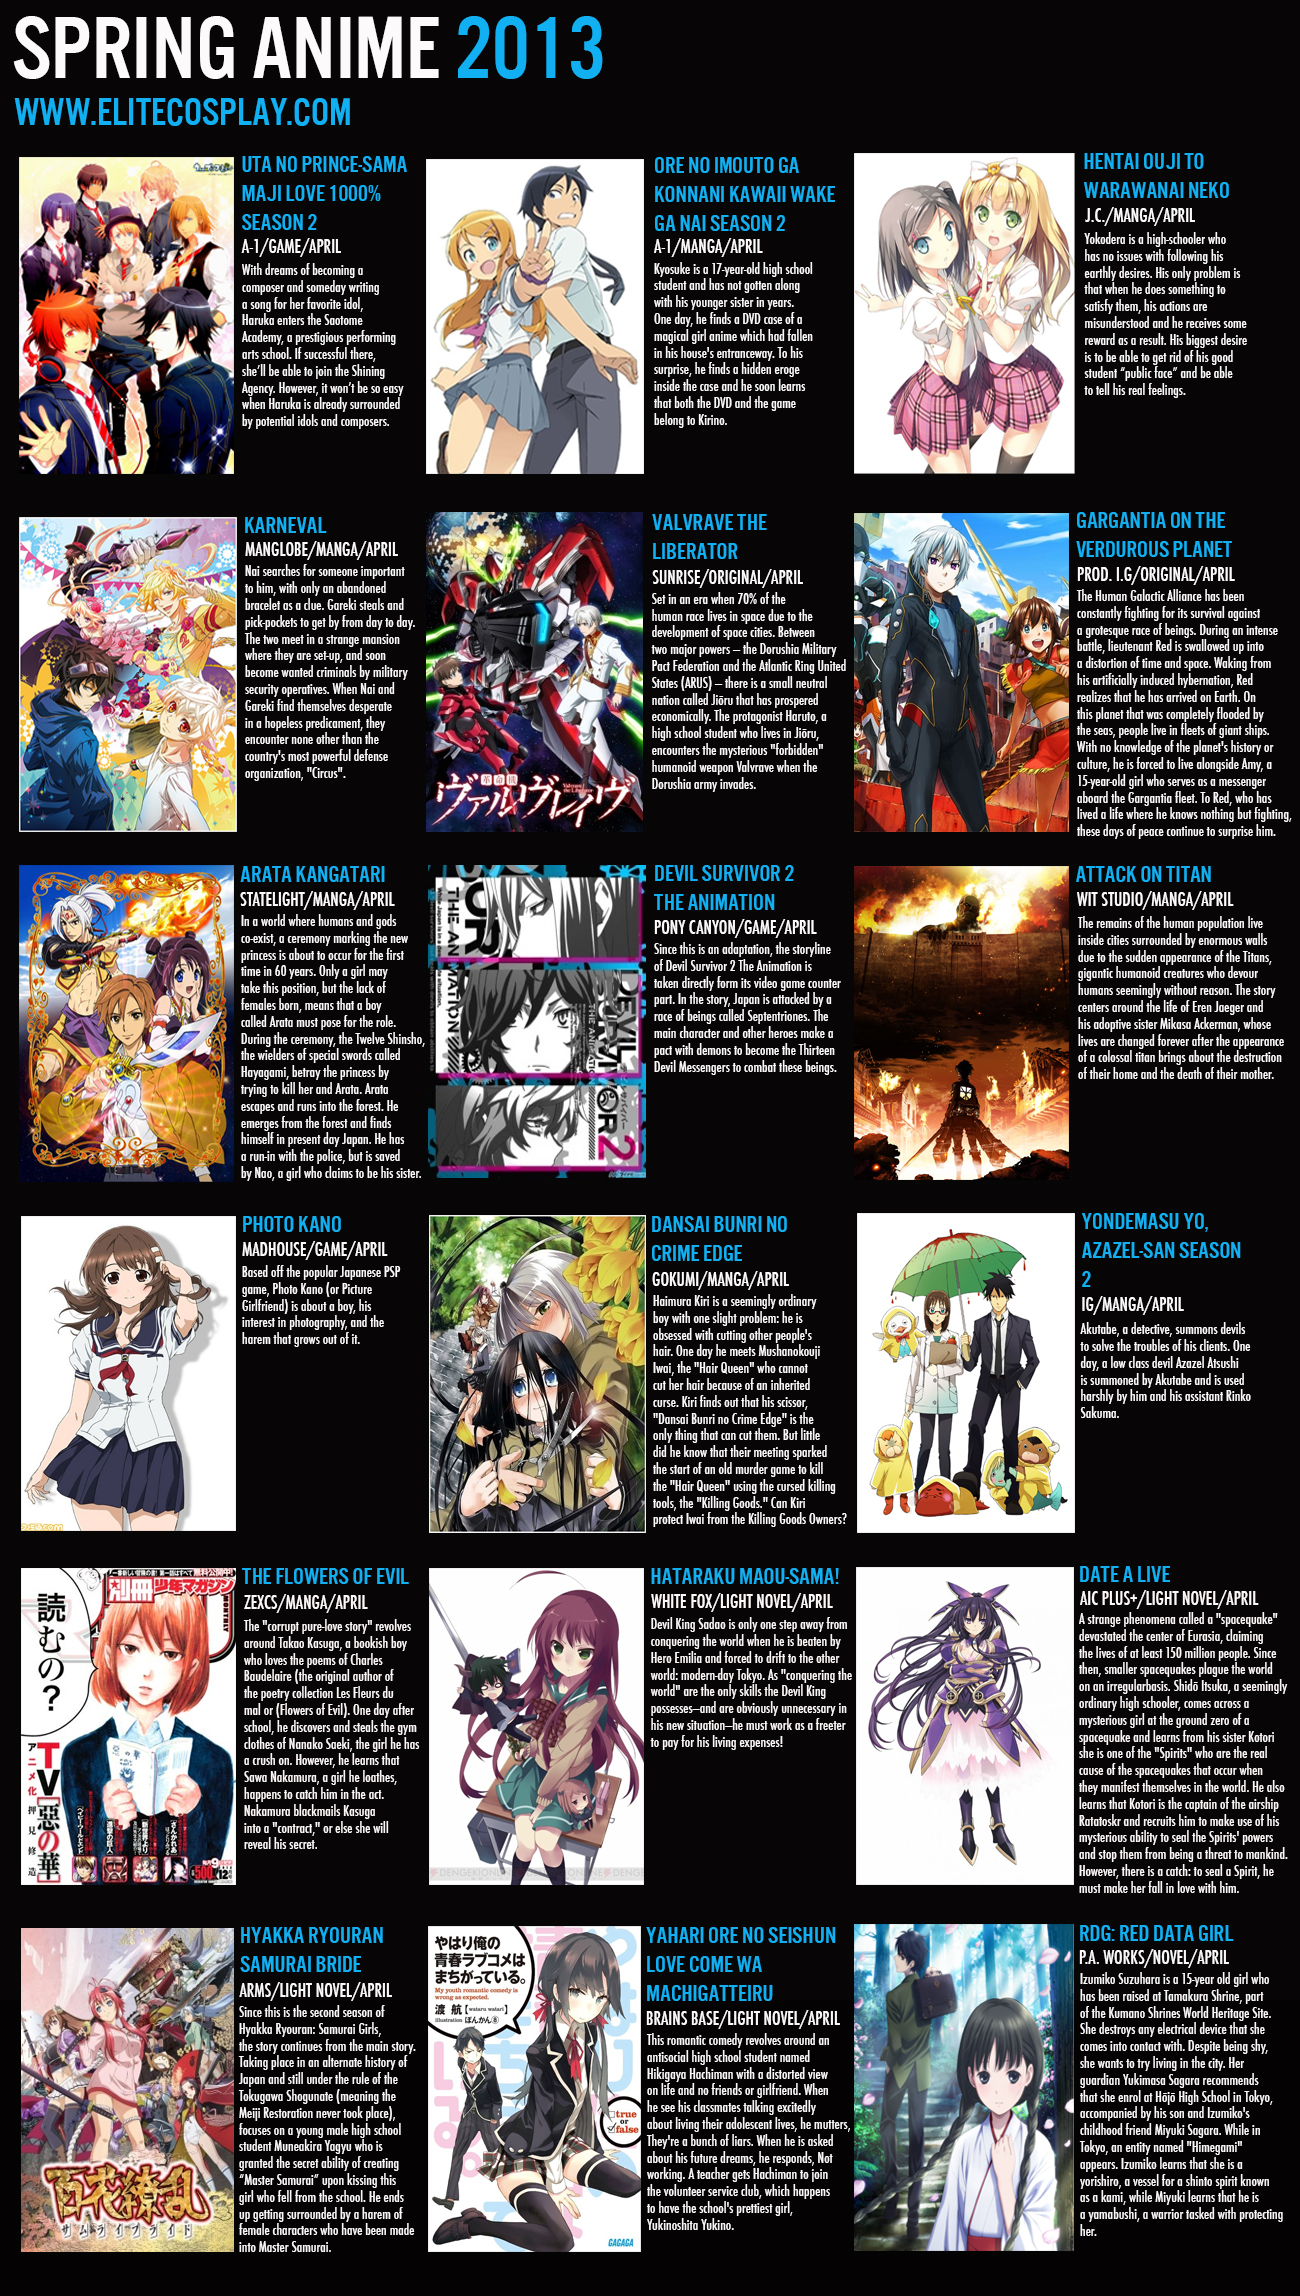 2013 anime movies